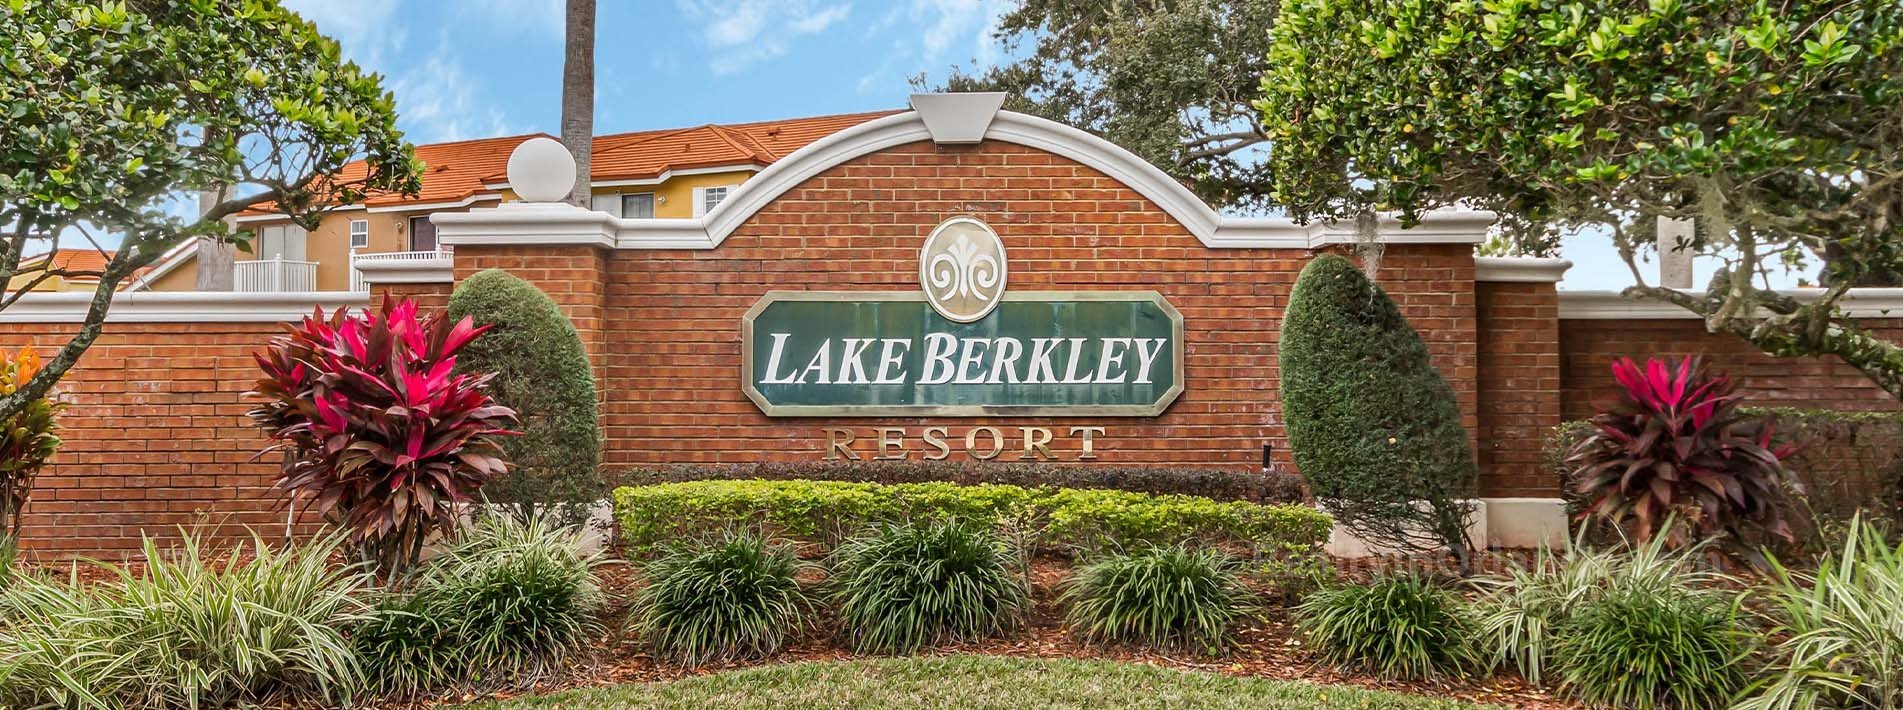 Lake Berkley Resort Real Estate